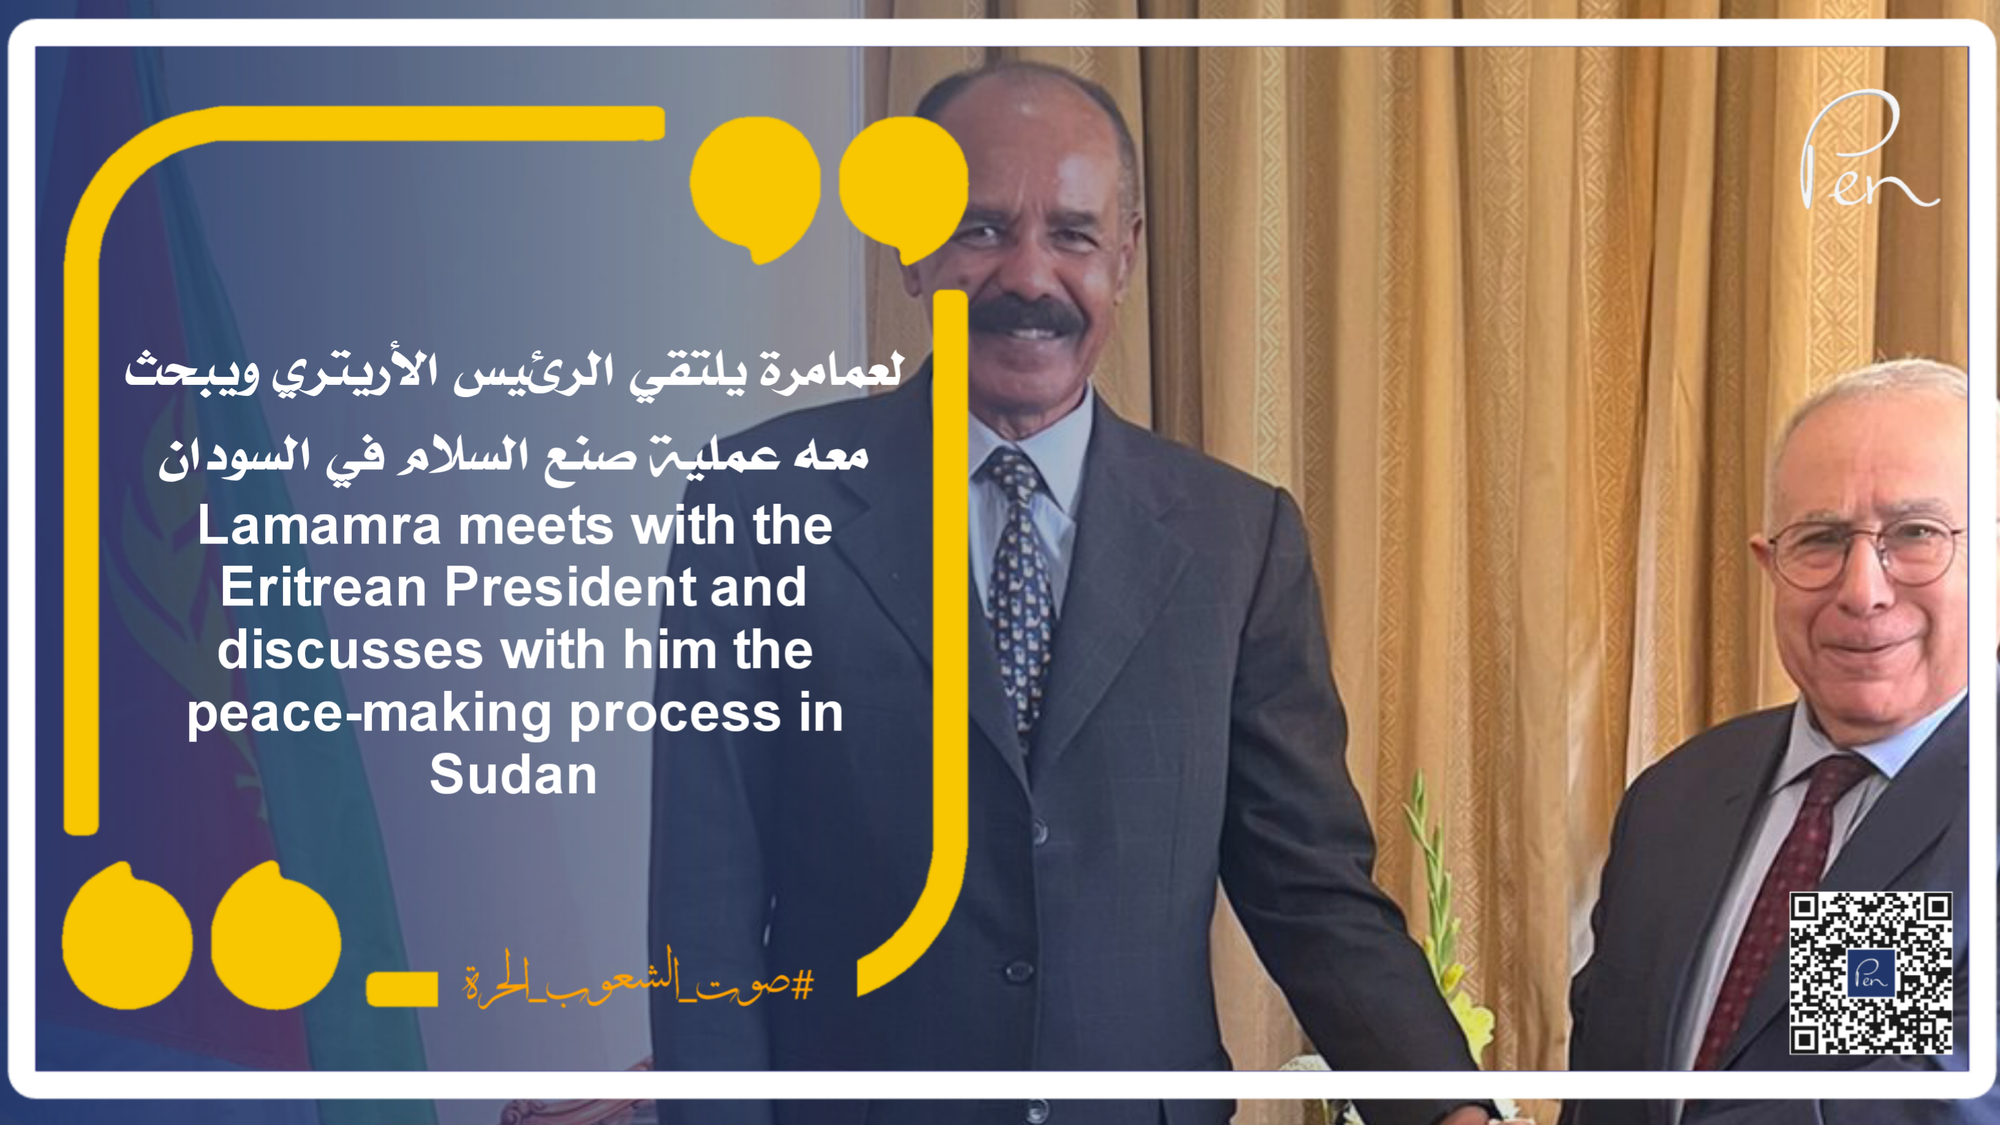 لعمامرة يلتقي الرئيس الأريتري ويبحث معه عملية صنع السلام في السودان